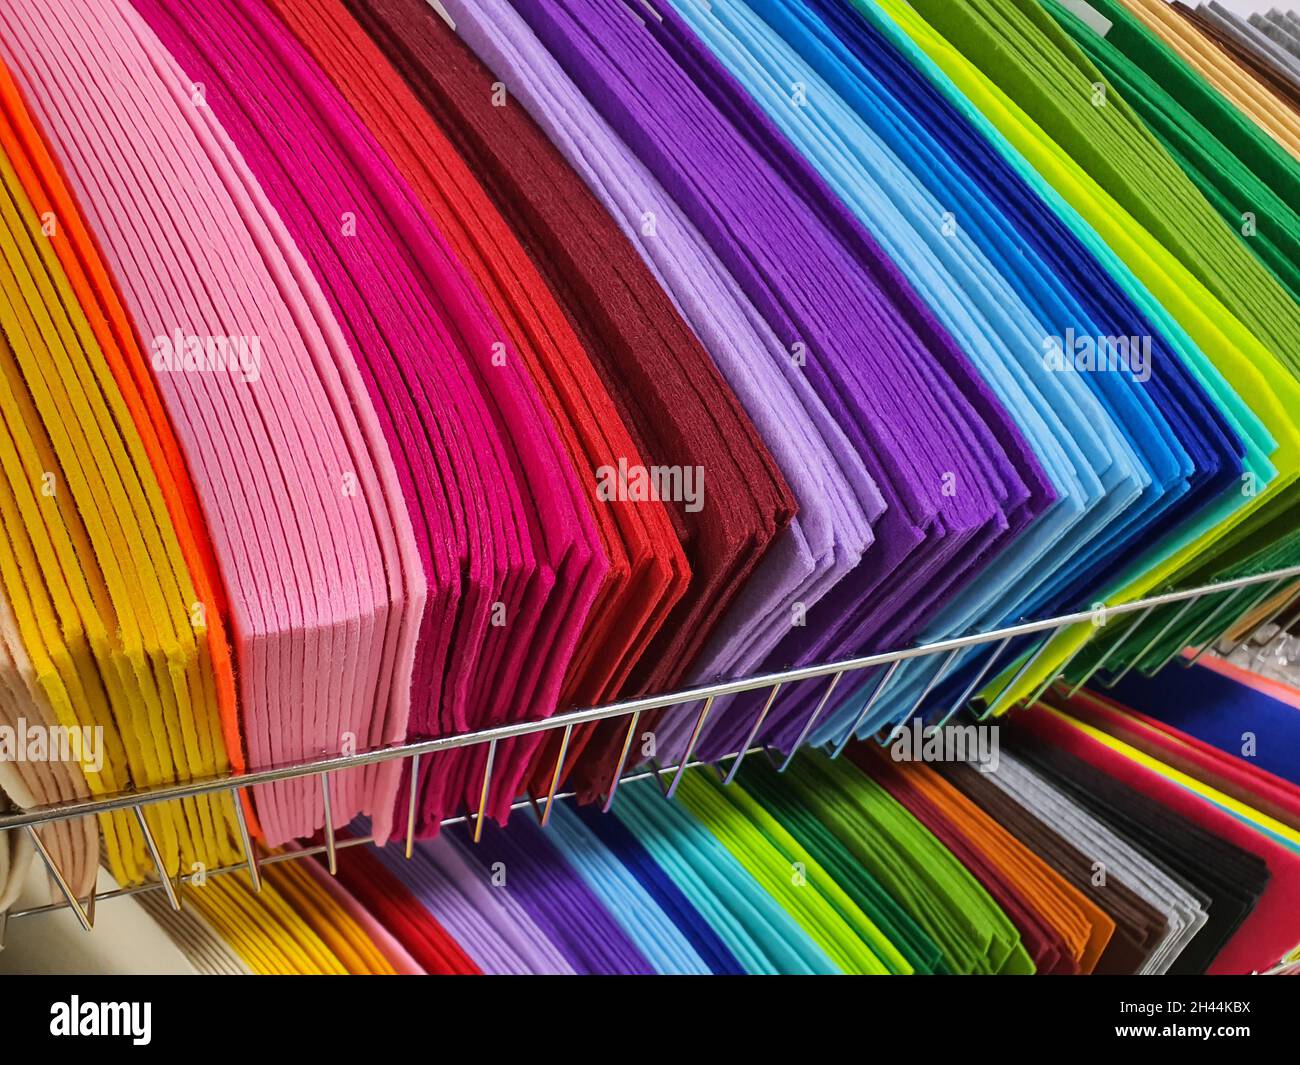 Pezzi di tessuto colorato, campioni di feltro in diversi colori per cucire  su scaffali nel negozio di hobby. Concetto di fai da te e artigianato Foto  stock - Alamy